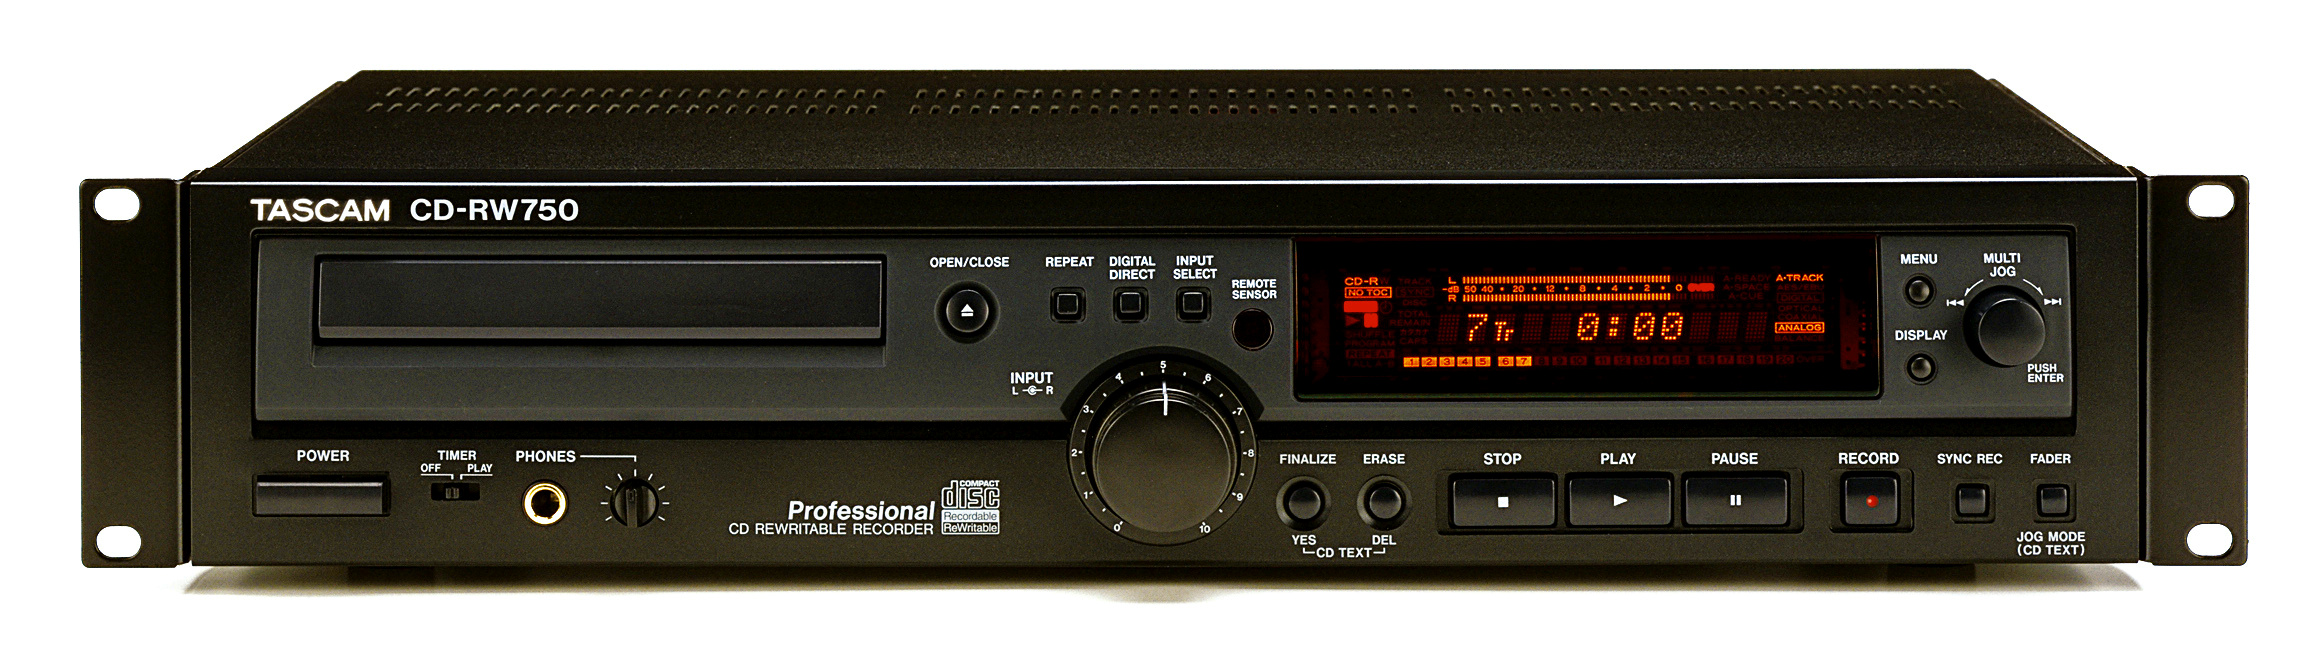 Tascam CD-RW 750-Prospekt-1.jpg